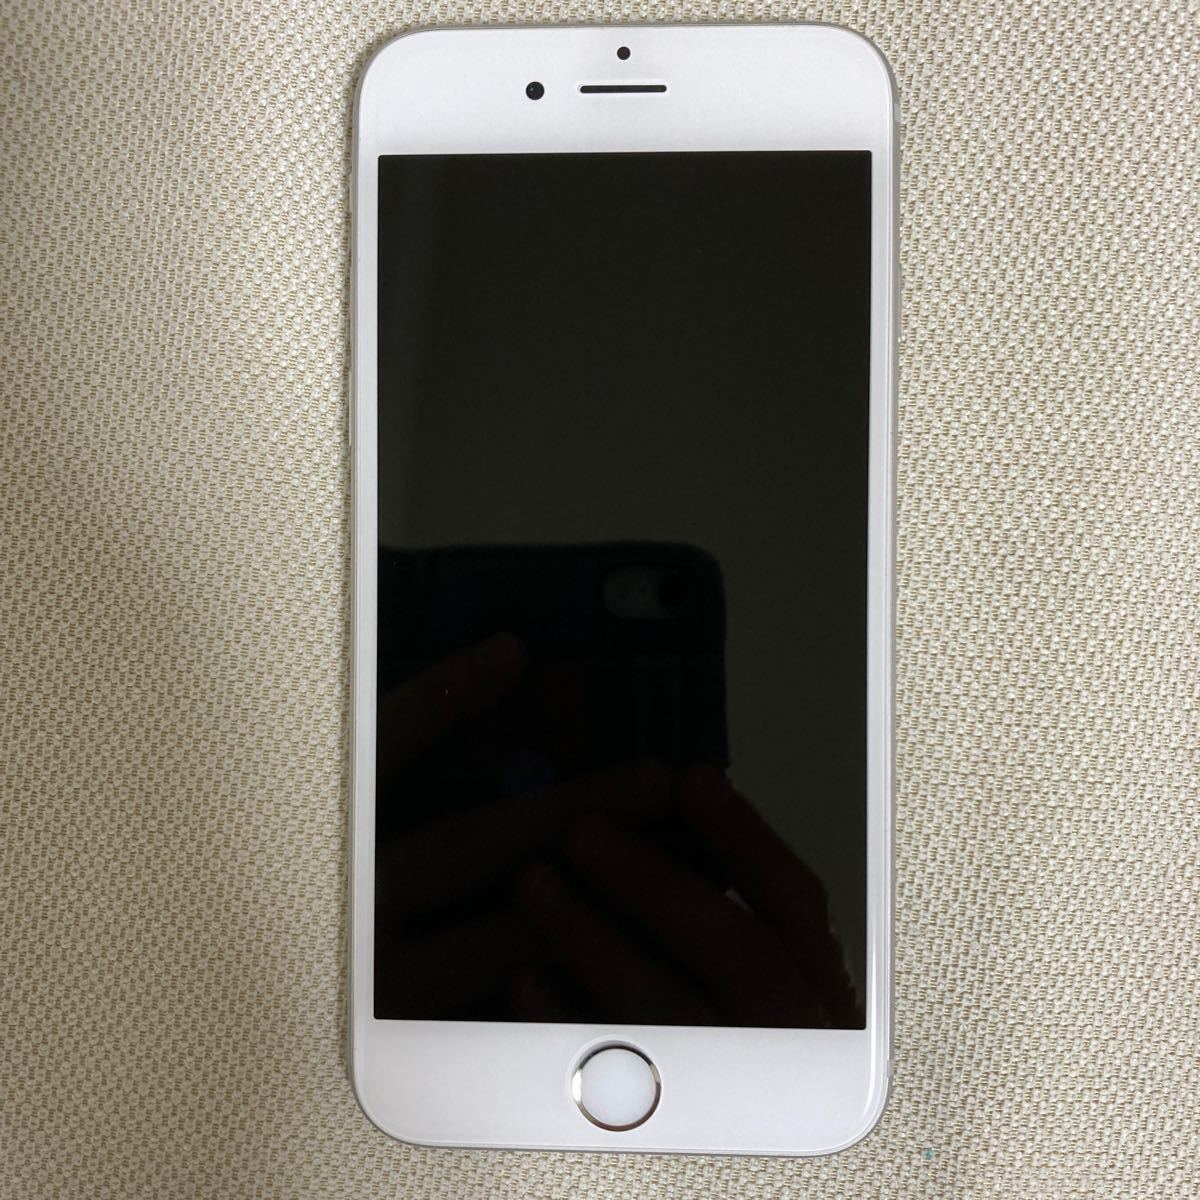 新しい Apple Plus Iphone6s Iphone6 Simフリーiphone シルバー ロック解除 済 その他 Reachahand Org